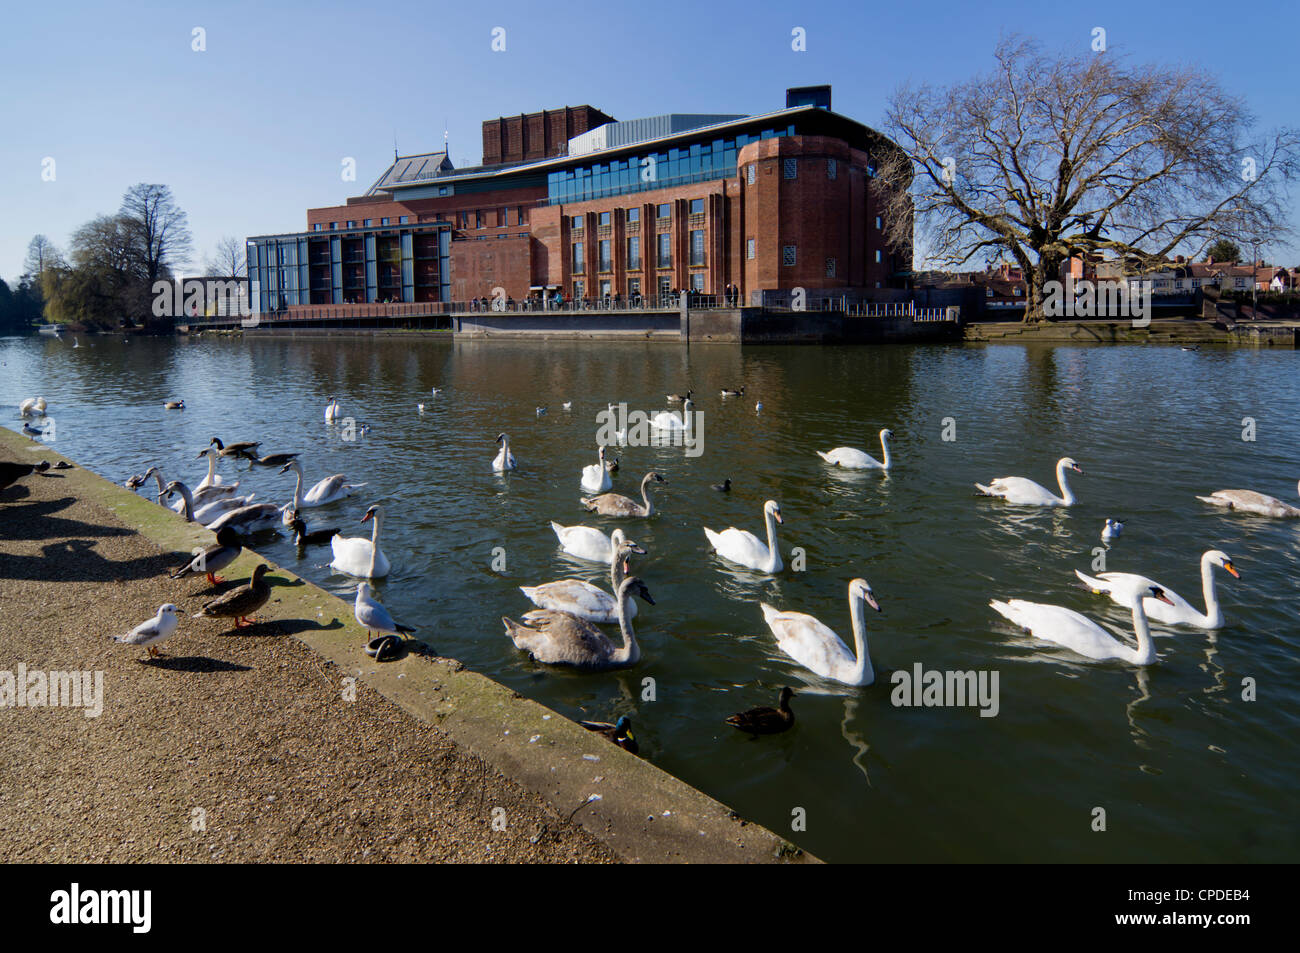 Teatro e cigni sul fiume Avon, Stratford upon Avon, Warwickshire, Inghilterra, Regno Unito, Europa Foto Stock